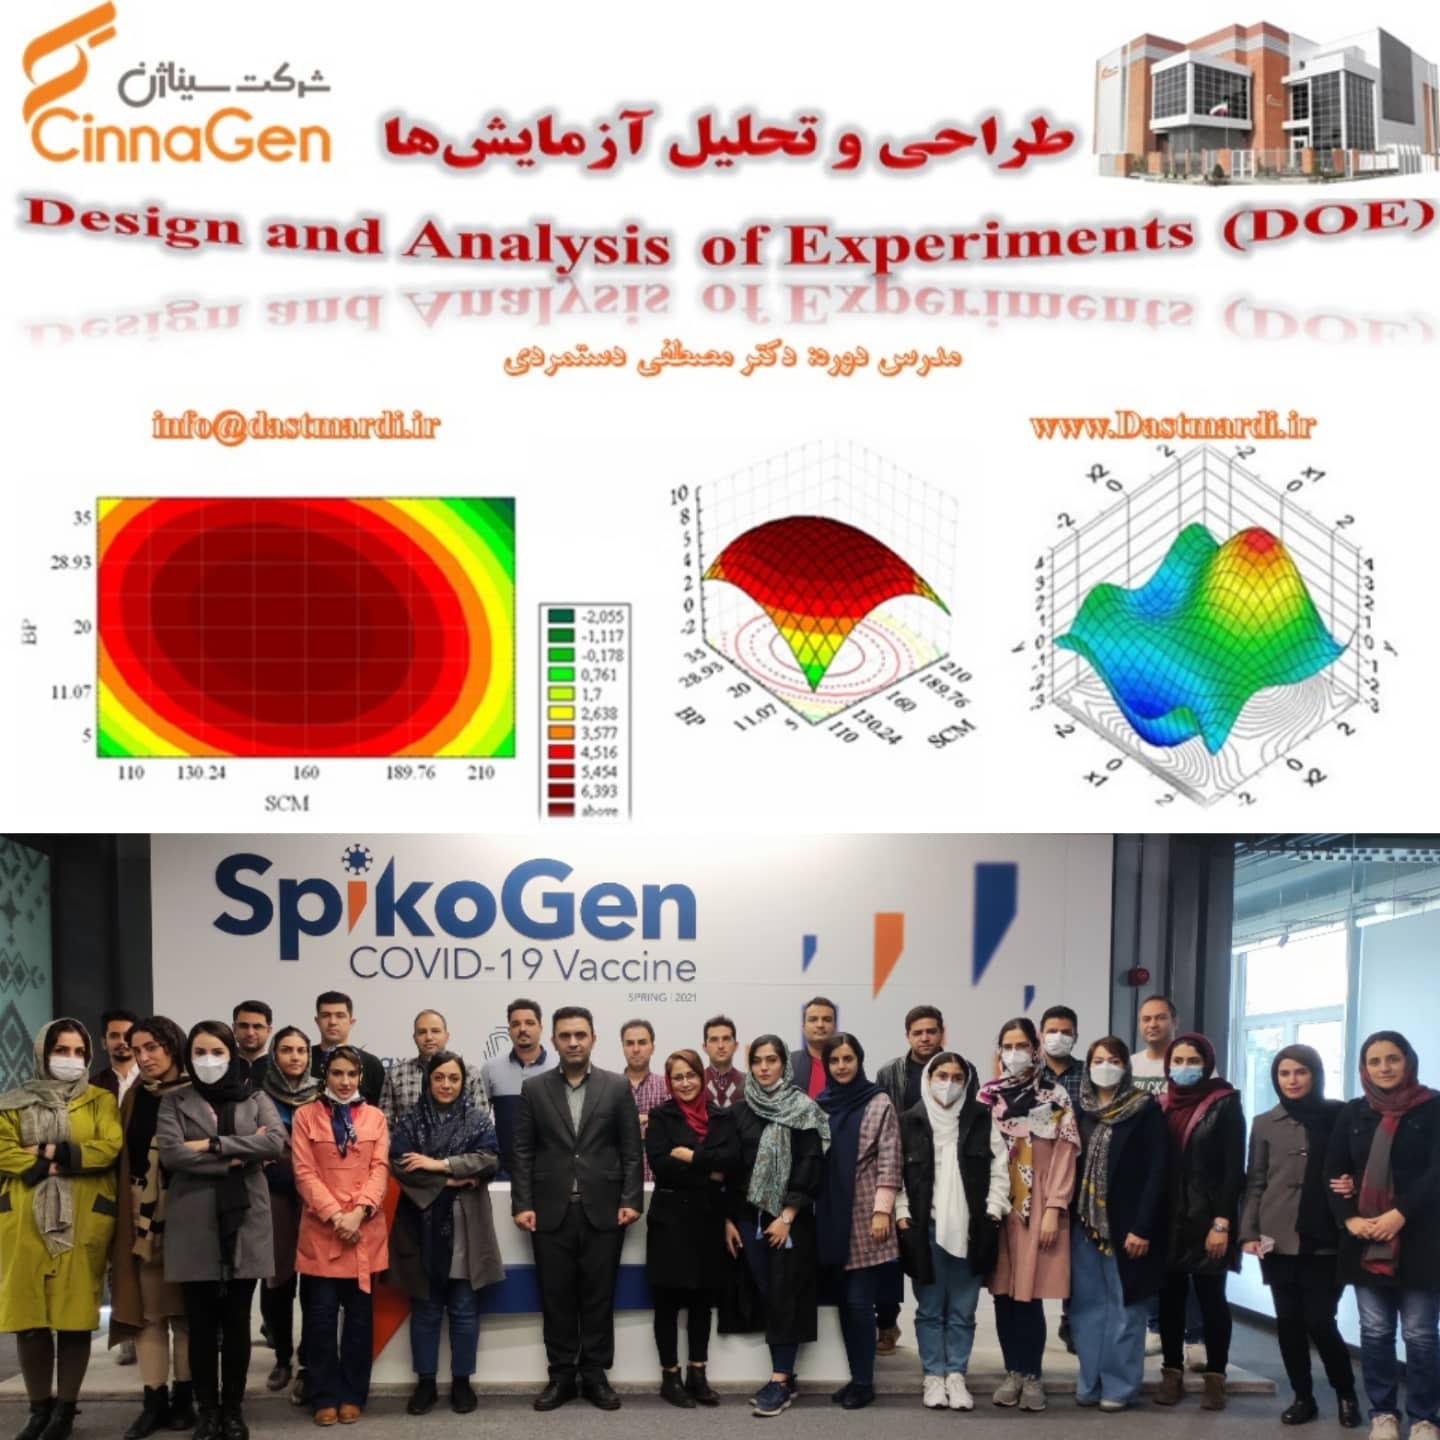 IMG 20211116 WA0001 برگزاری دوره آموزشی طراحی و تحلیل آزمایش ها در شرکت سیناژن